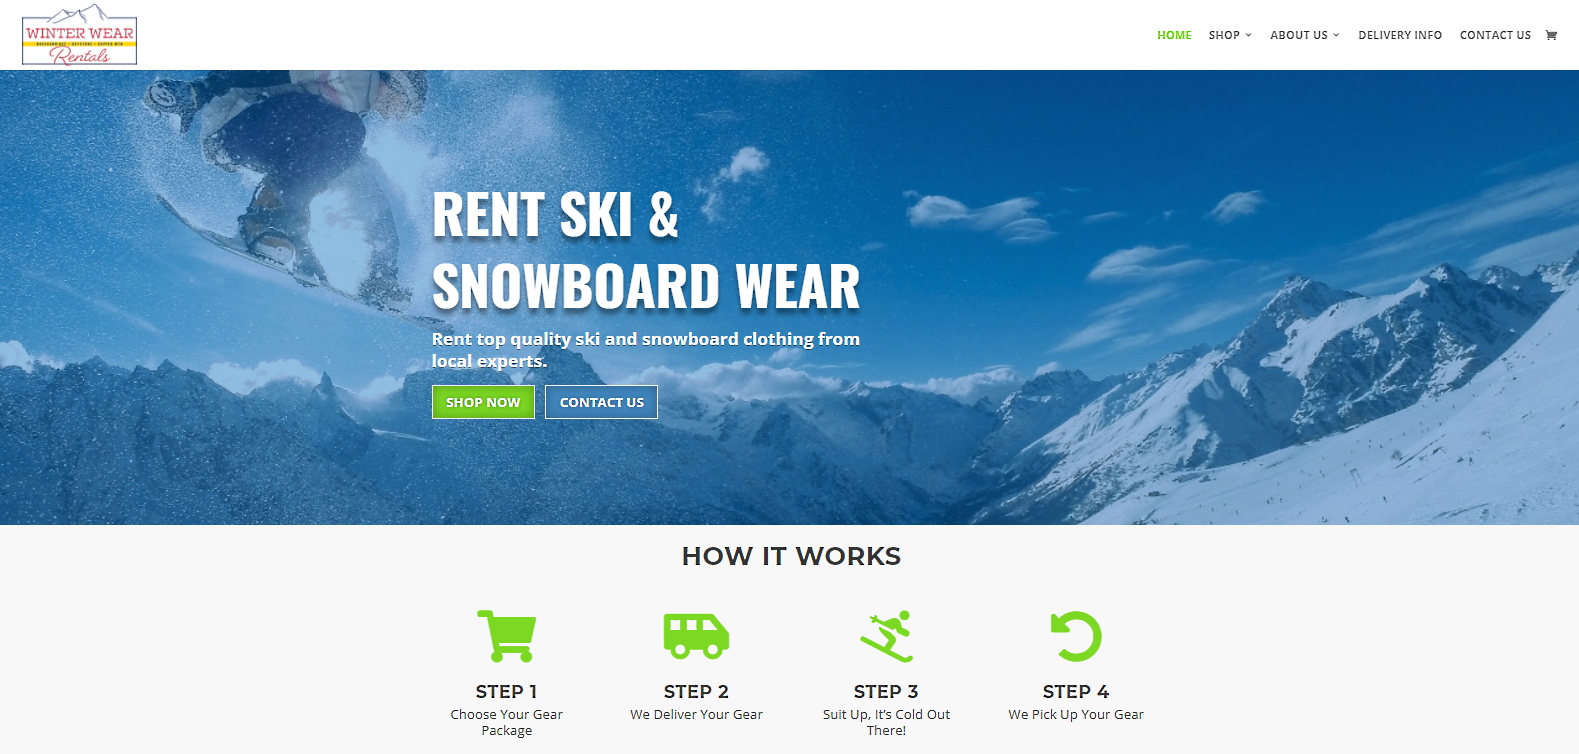 winter wear rentals - Summit County Breckenridge